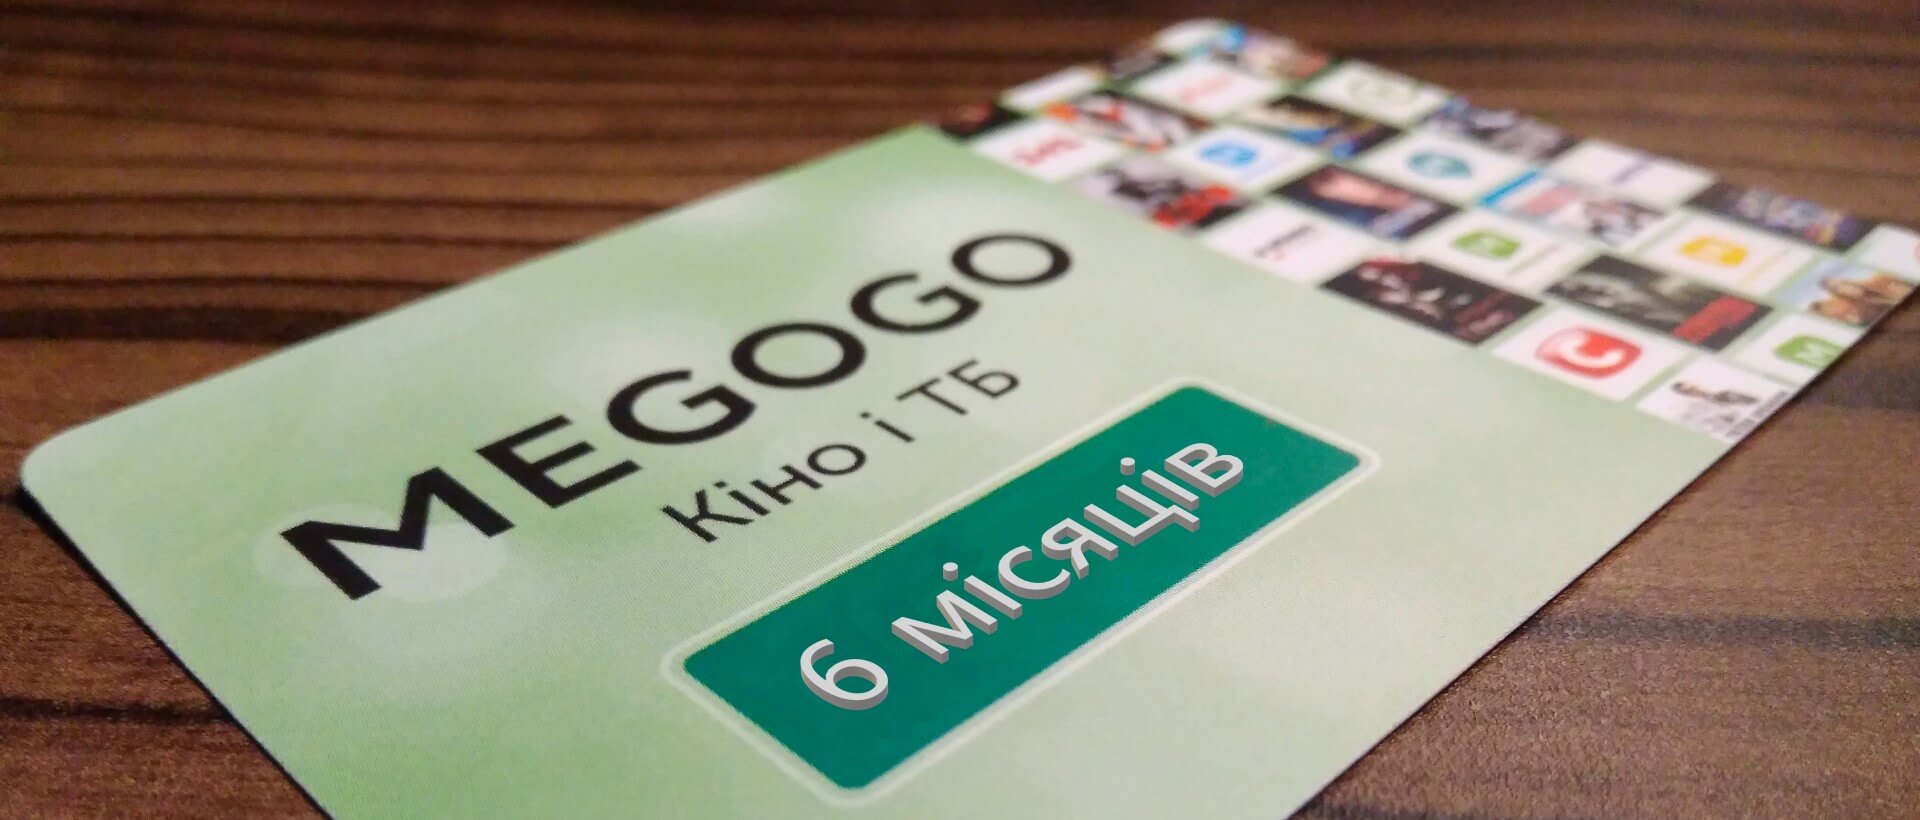 Підписка на пакет Megogo Кіно і ТБ на 6 місяців "Легка", Київ - Фото